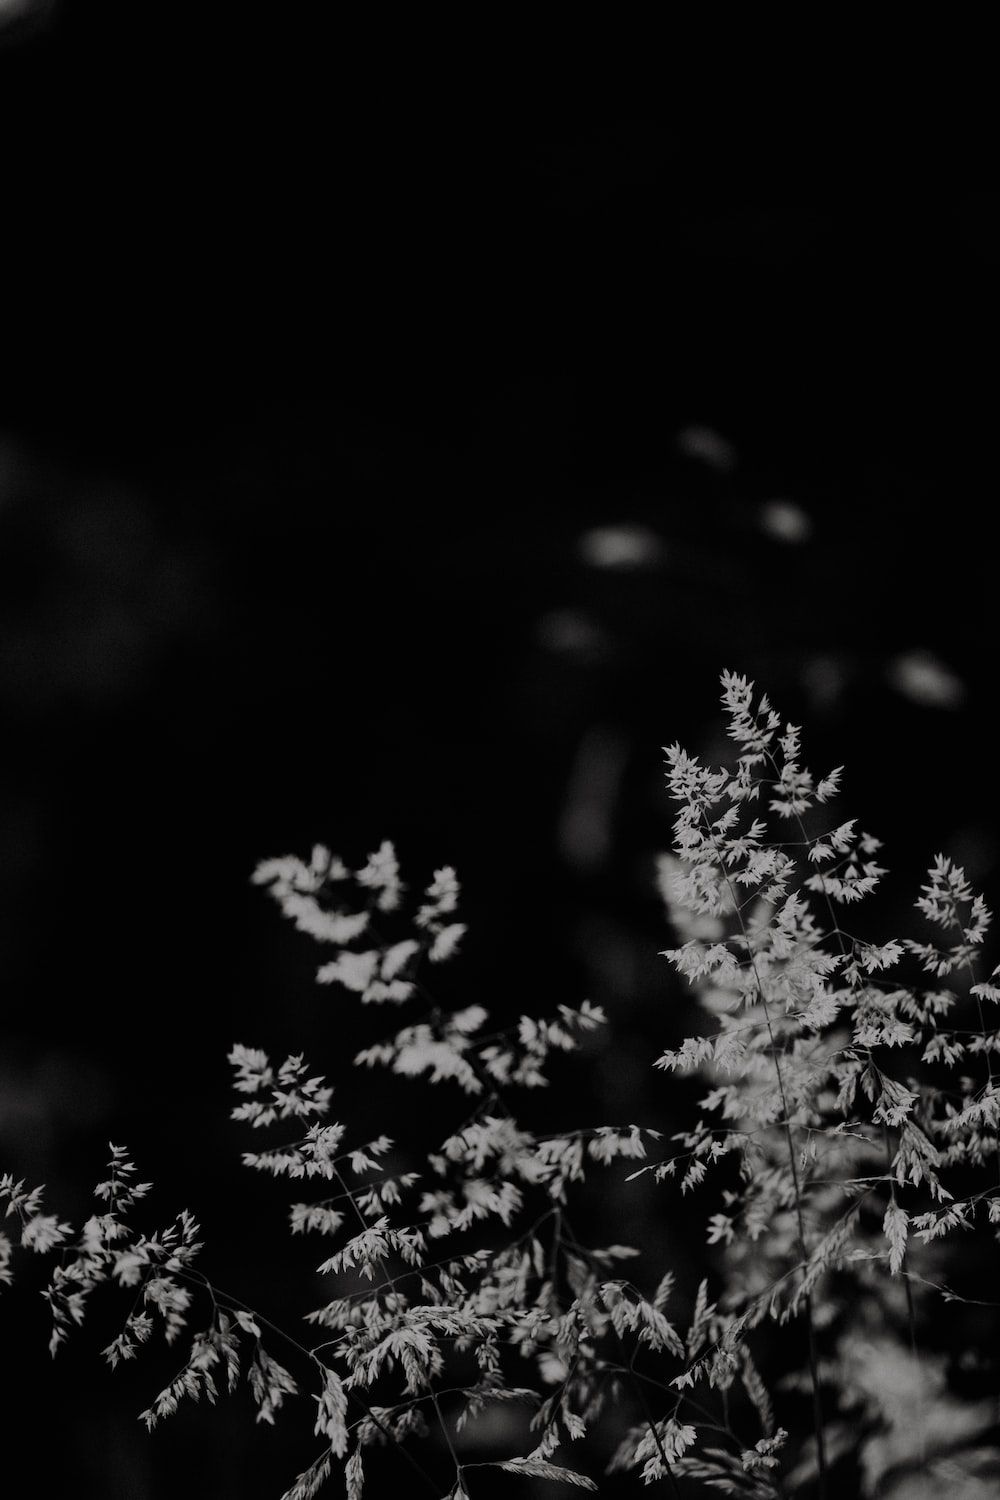  IPhone 7 Schwarz Hintergrundbild 1000x1500. Foto Zum Thema Ein Schwarz Weiß Foto Einer Pflanze